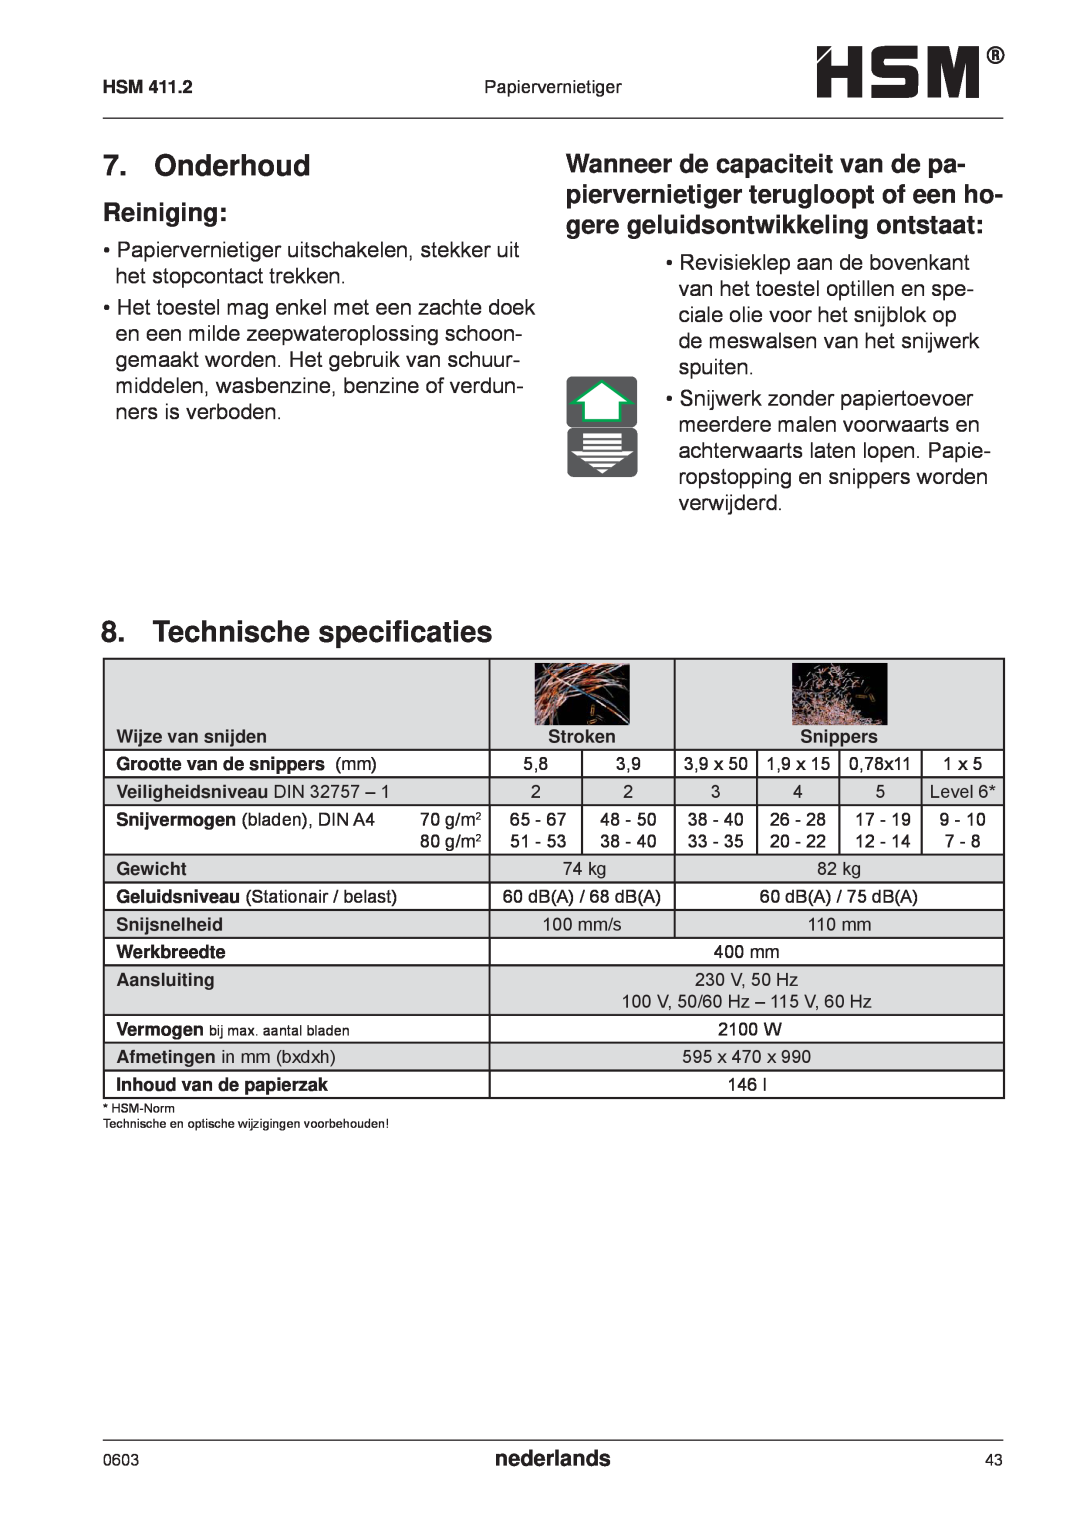 HSM HSM 411.2 operating instructions Onderhoud, Technische speciﬁcaties, Reiniging, nederlands 